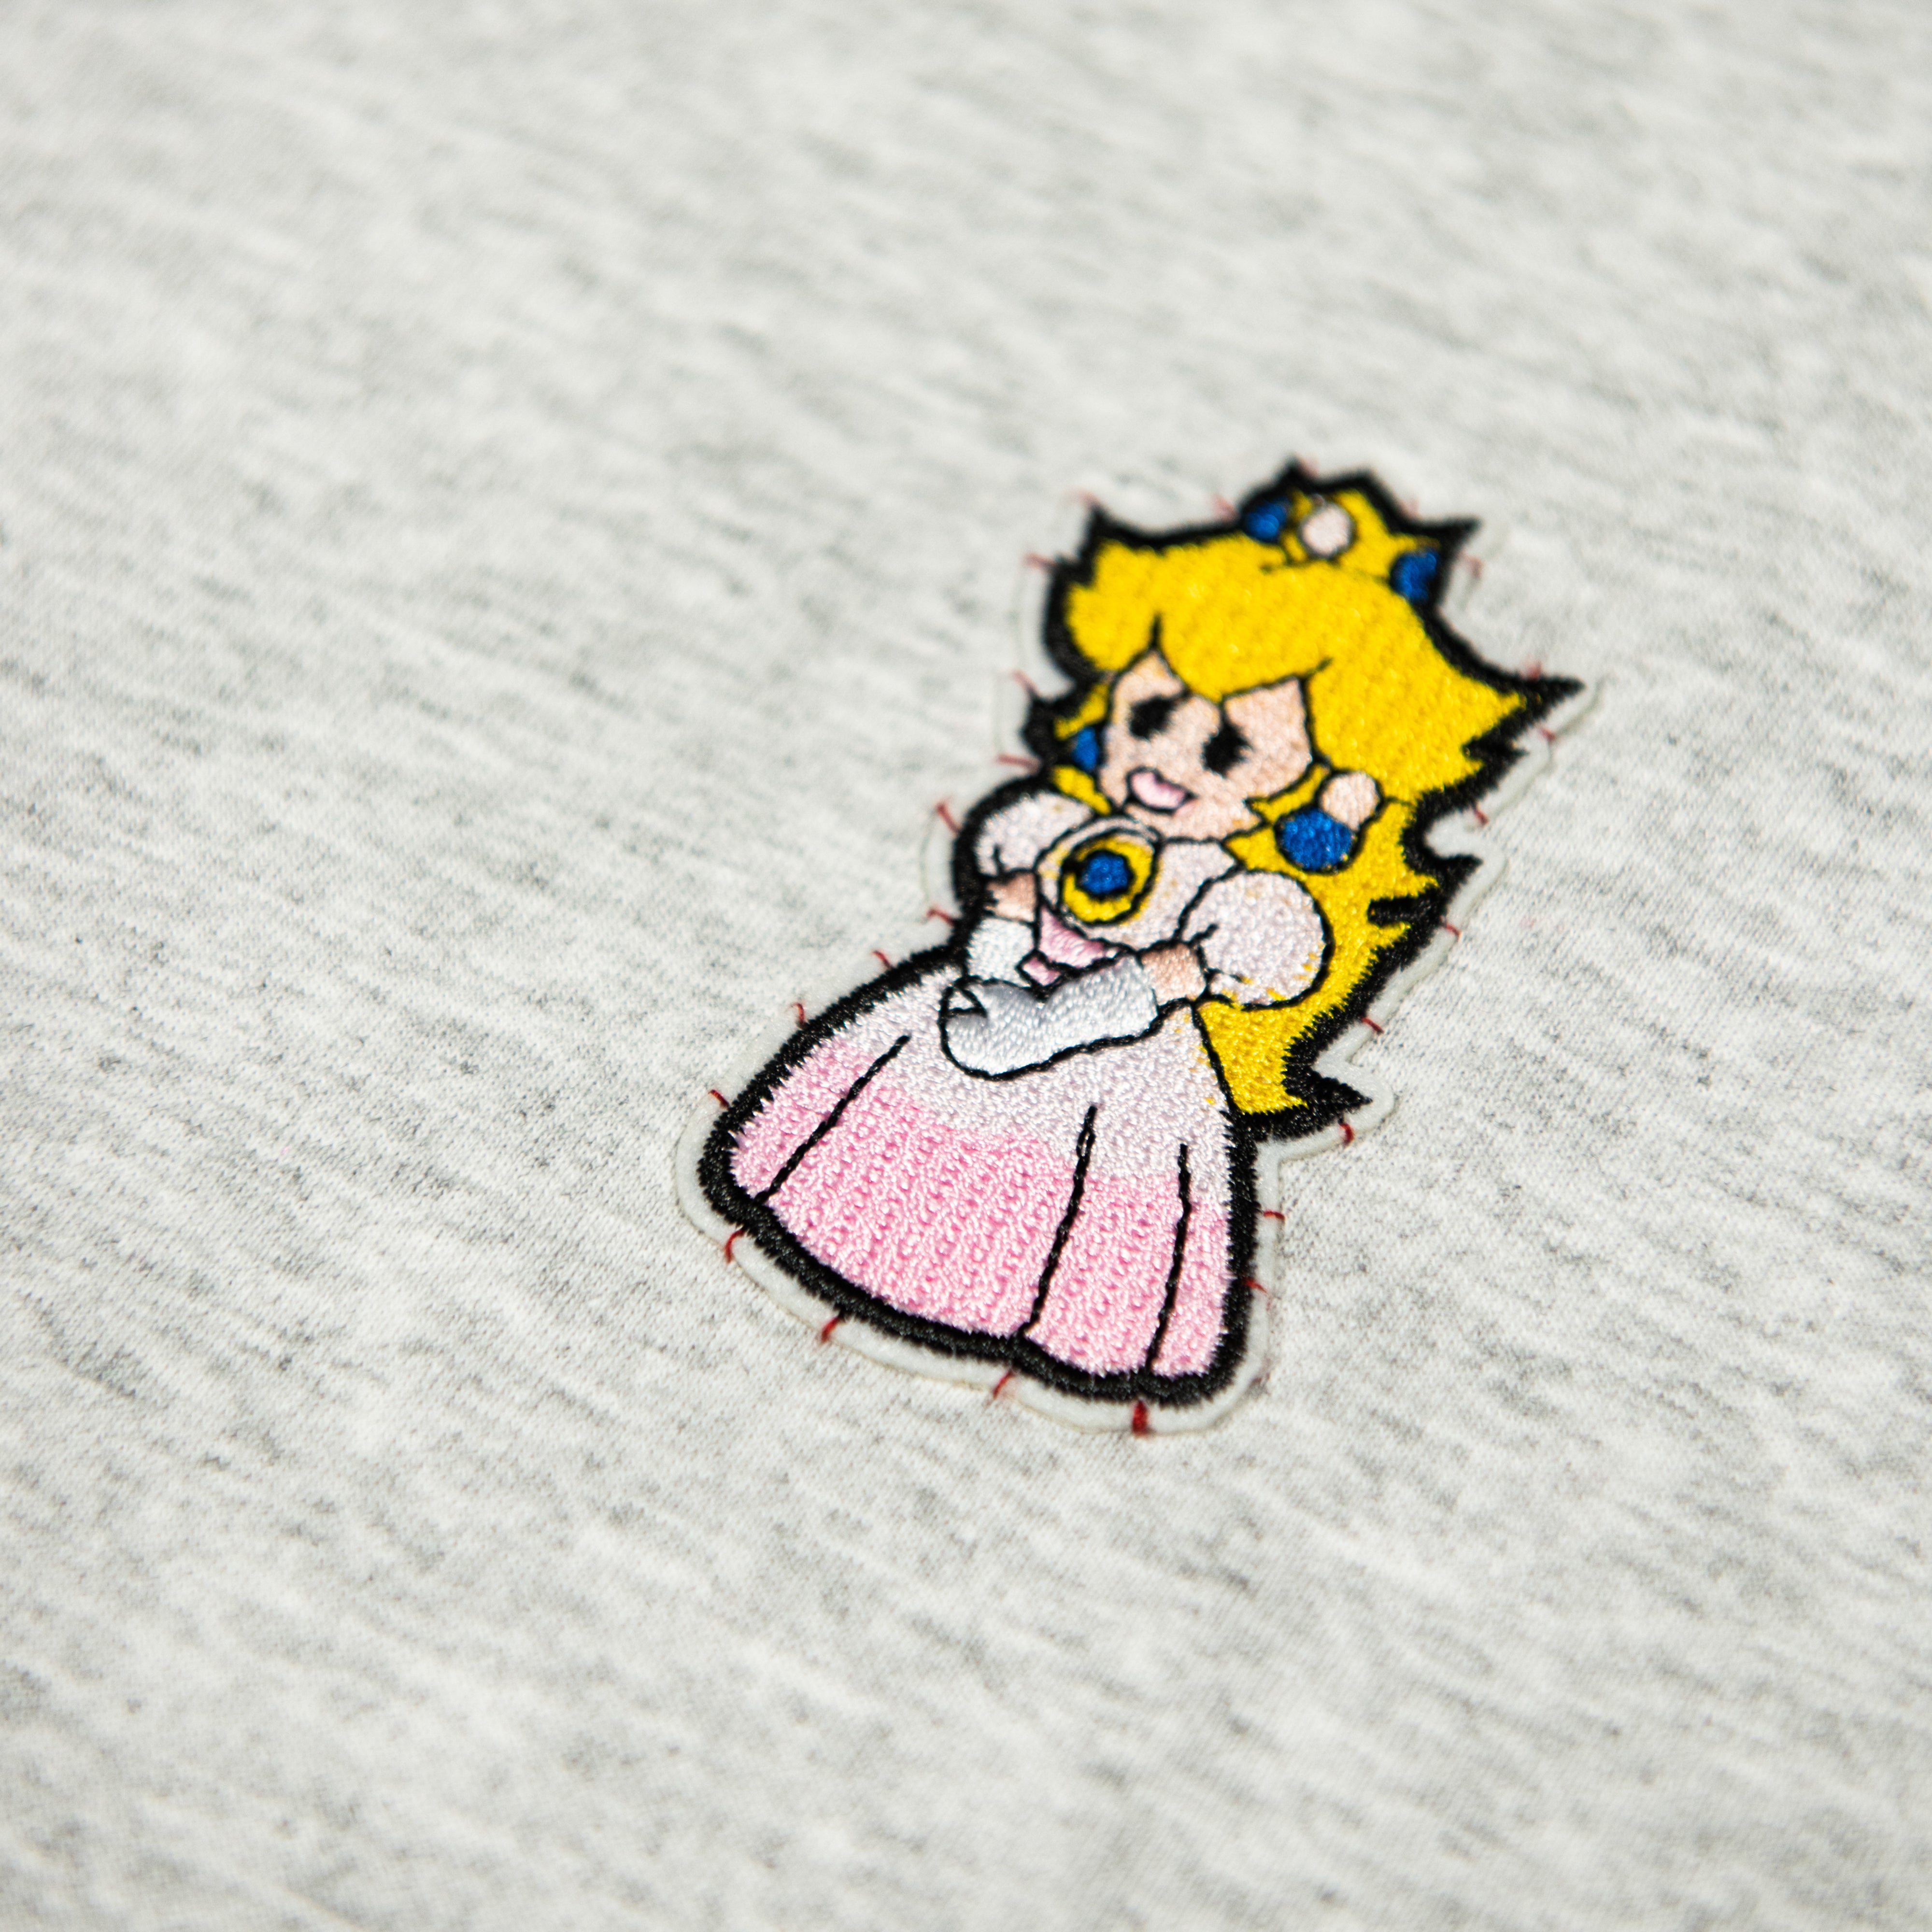 T-shirt principessa Peach